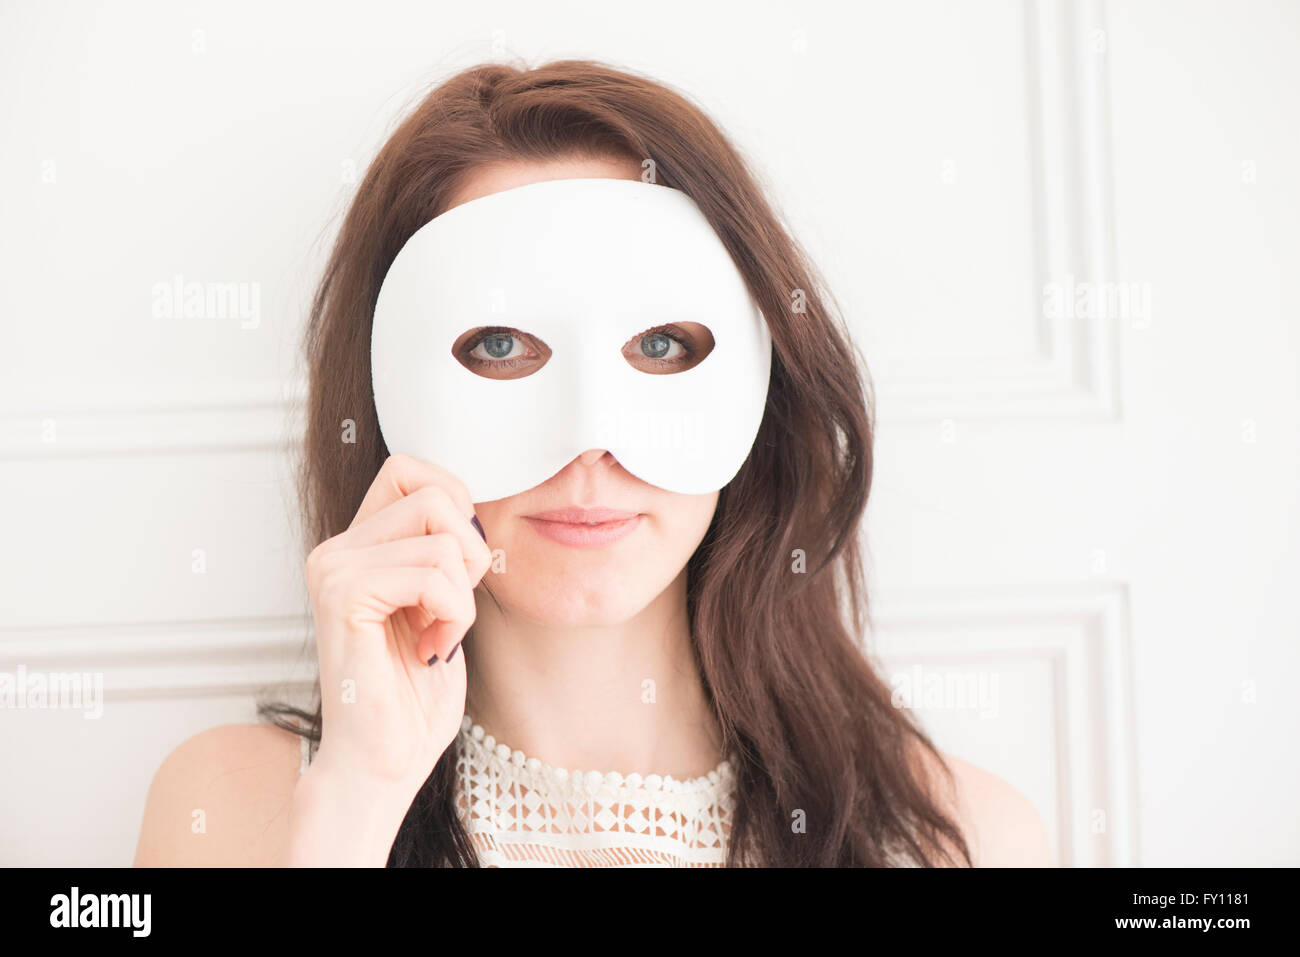 Donna faccia nascosto dietro la maschera bianca. Concetto di identità, mistero e travestimento. Foto Stock